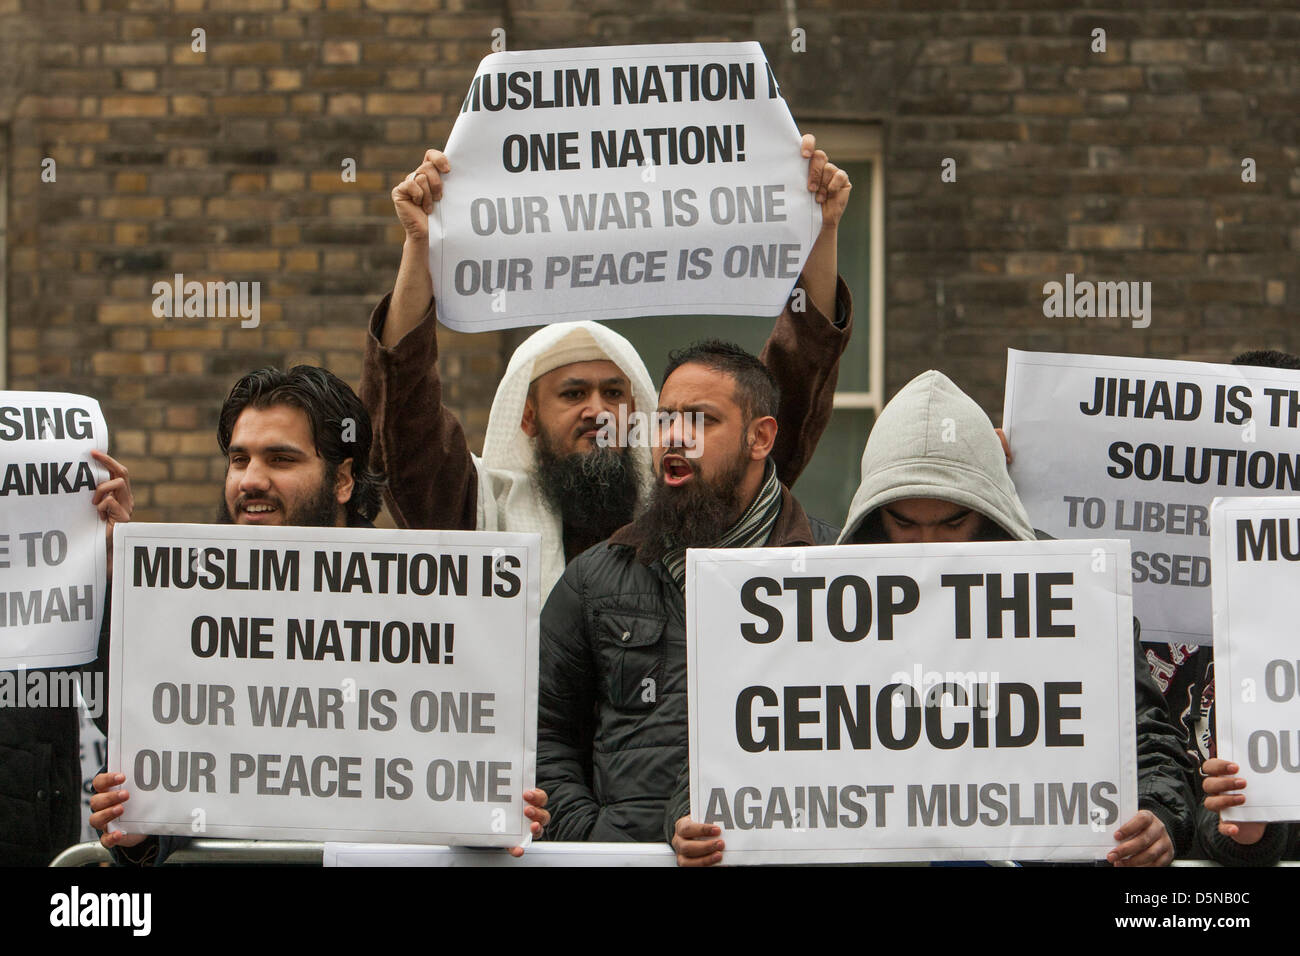 Londra, UK, 5 aprile 2013 Anjem Choudary musulmana del gruppo detengono cartelloni a dimostrazione al di fuori del Sri Lanken Alta Commissione su presunte atrocità commesse dai buddisti contro i musulmani in quel paese. Foto Stock